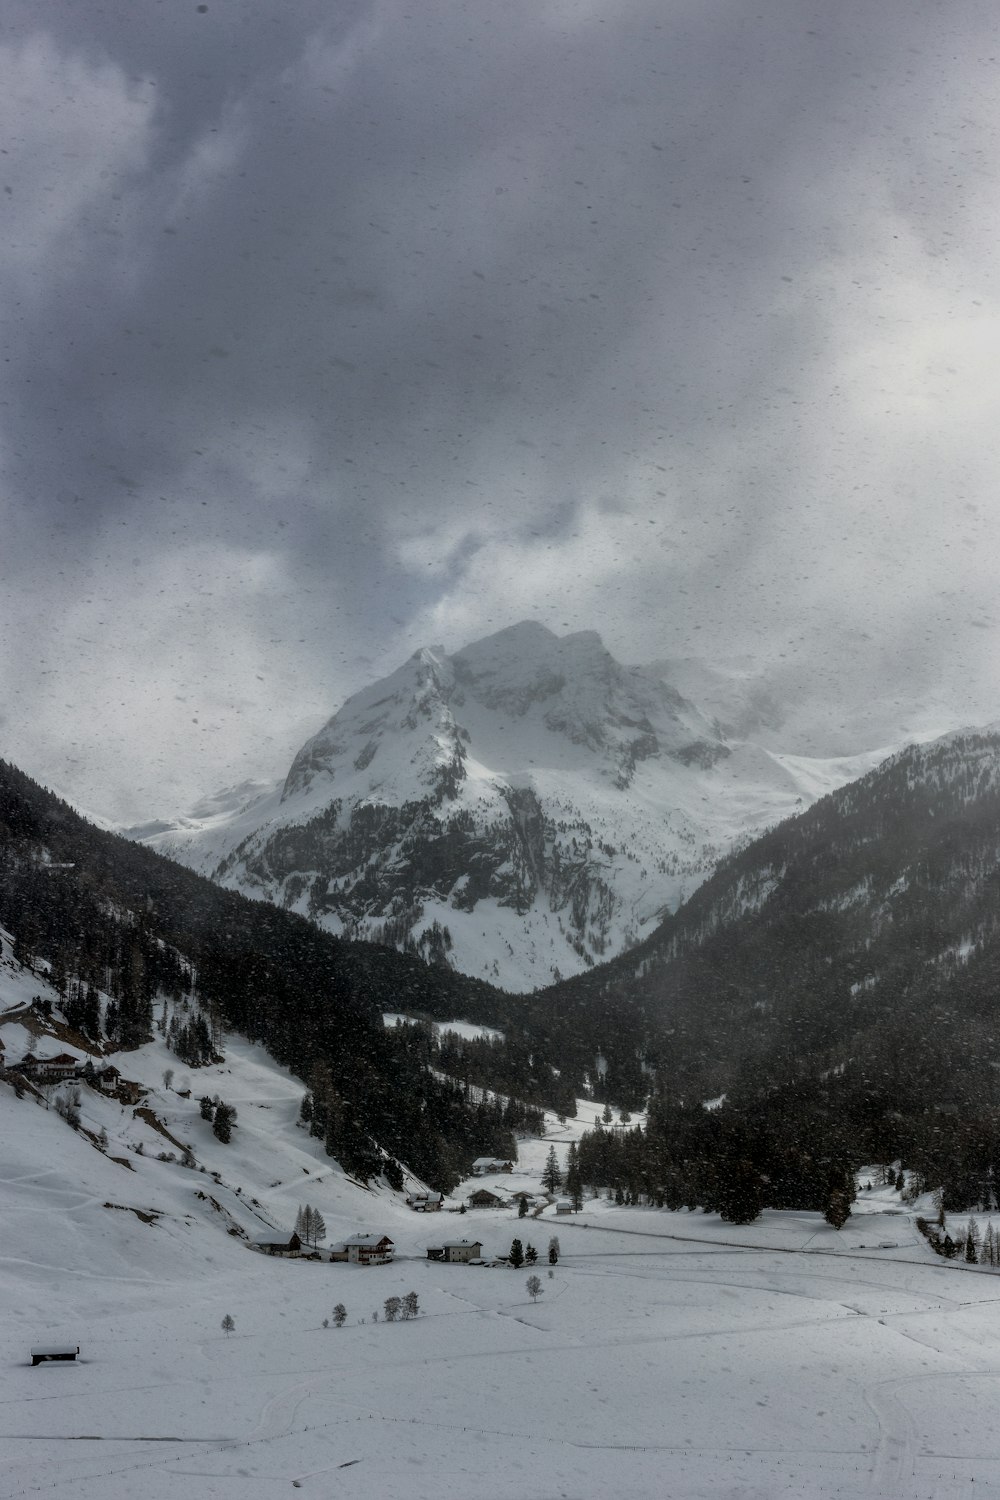 Escala de grises de la montaña alpina cubierta por nubes oscuras